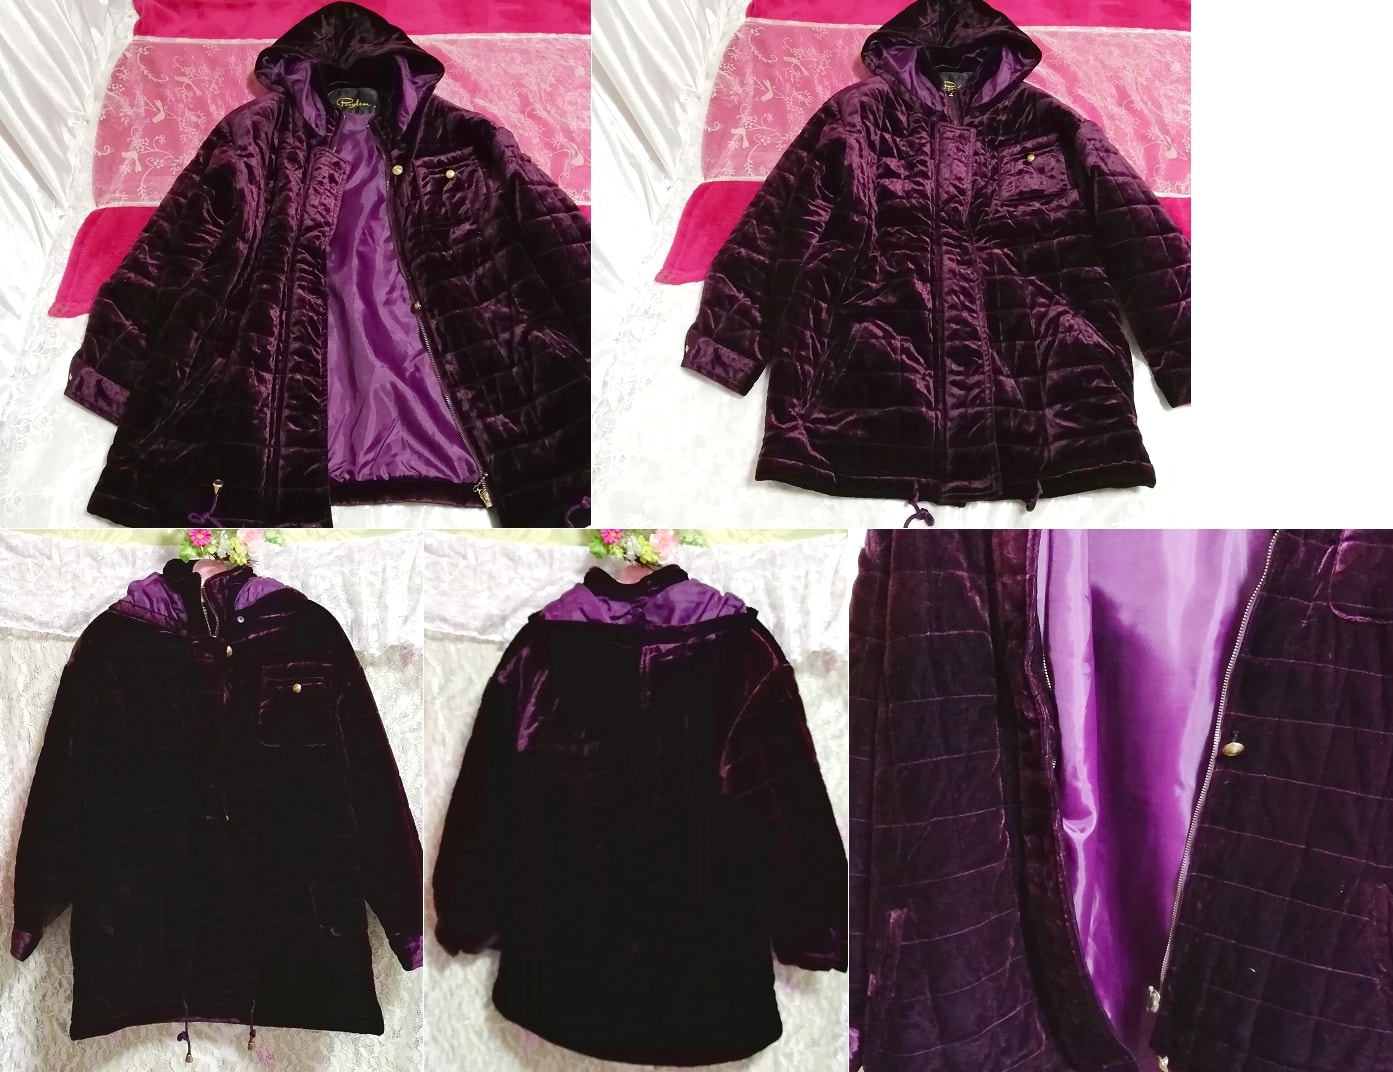 Prendas de abrigo de capa de abrigo largo con capucha de terciopelo brillante púrpura, abrigo, abrigo abajo, talla m